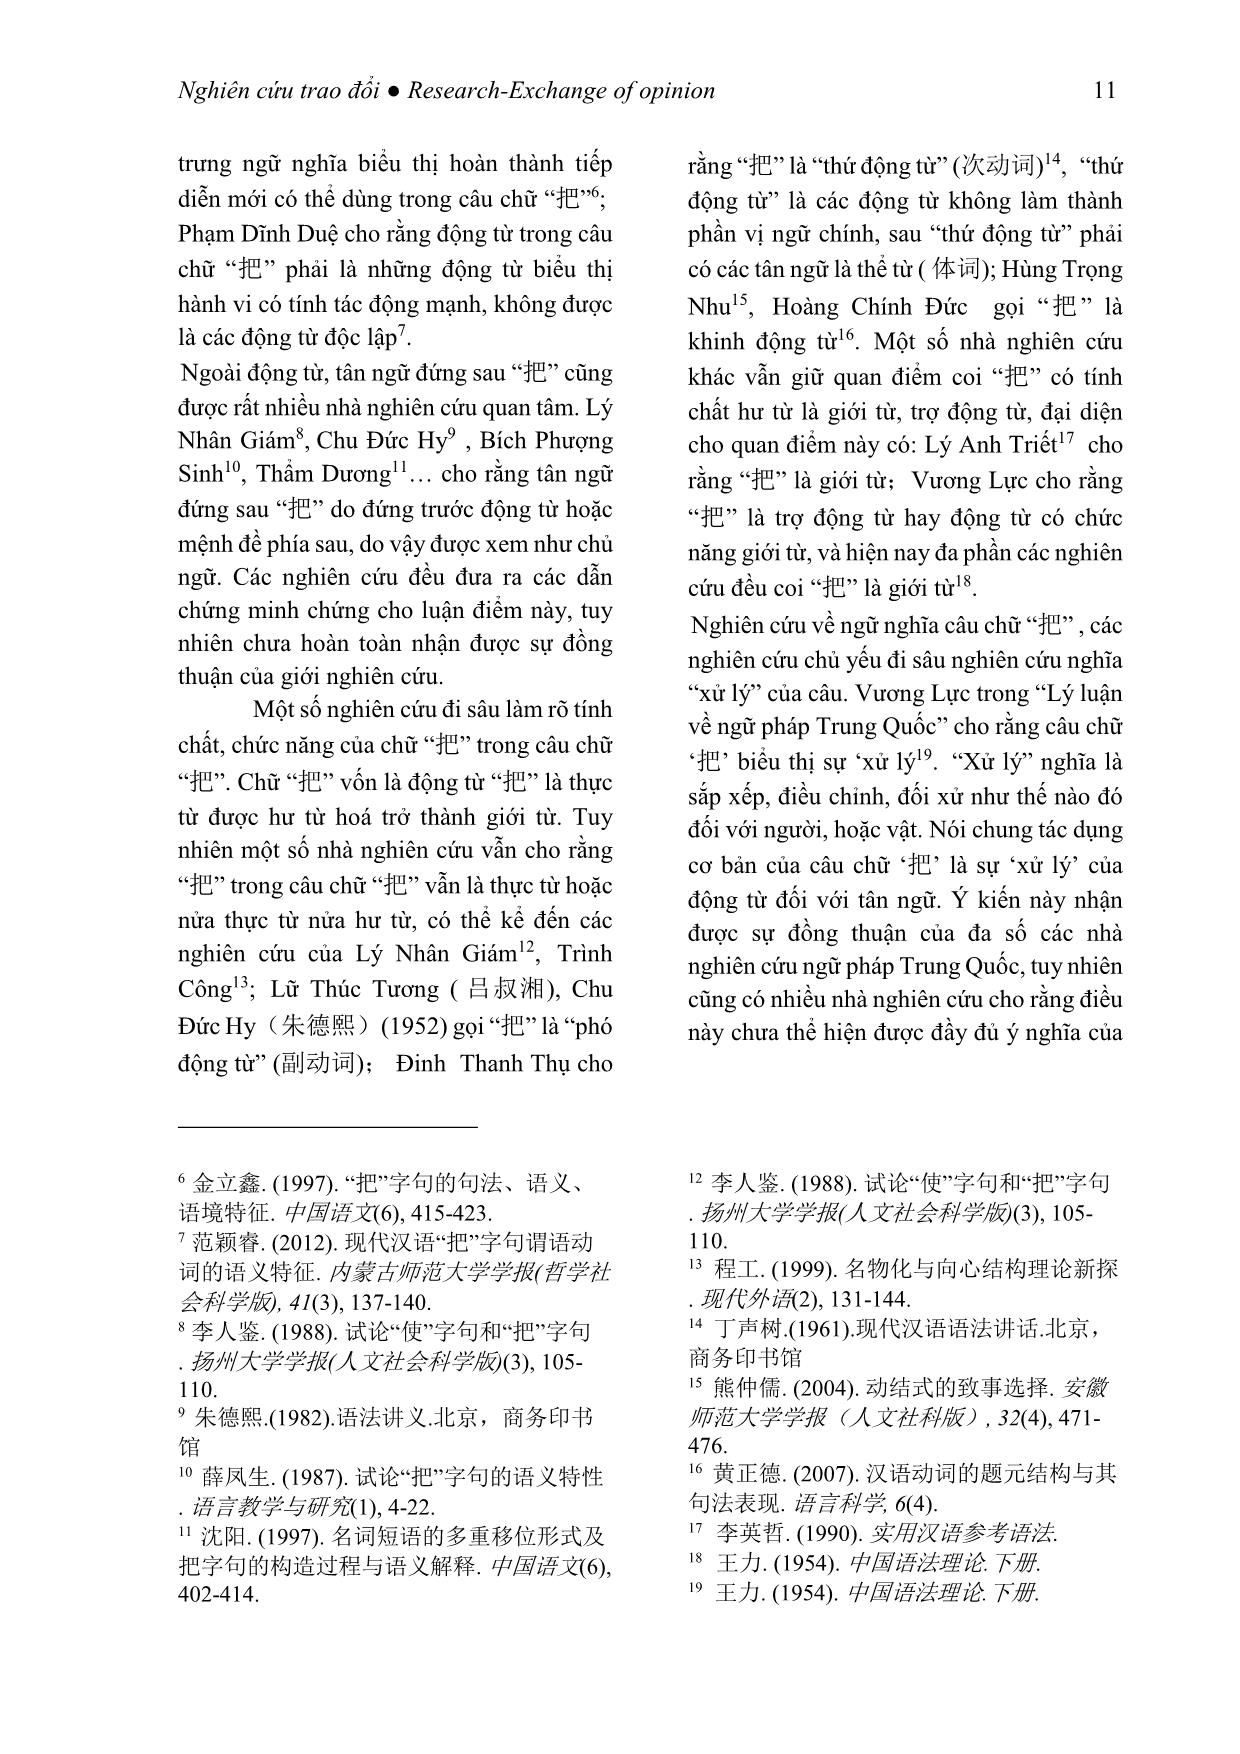 Tình hình nghiên cứu các kiểu câu đặc biệt trong tiếng Trung Quốc tại Trung Quốc trang 3